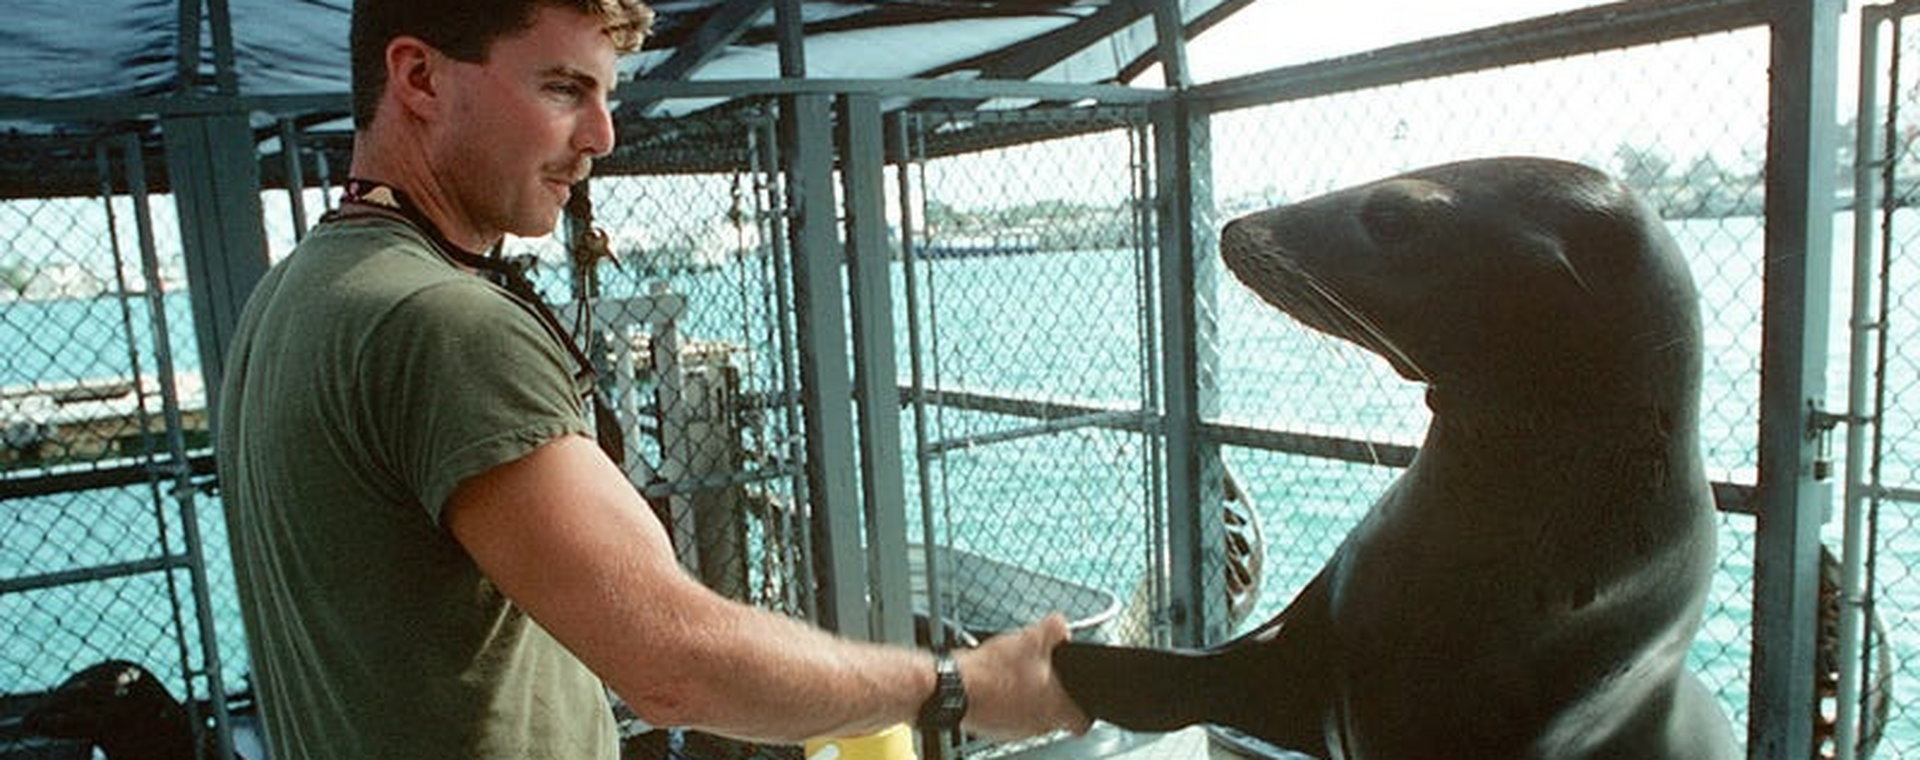 Trener US Navy z lwem morskim Mark 5 Marine Mammal w Key West w październiku 1990 r.